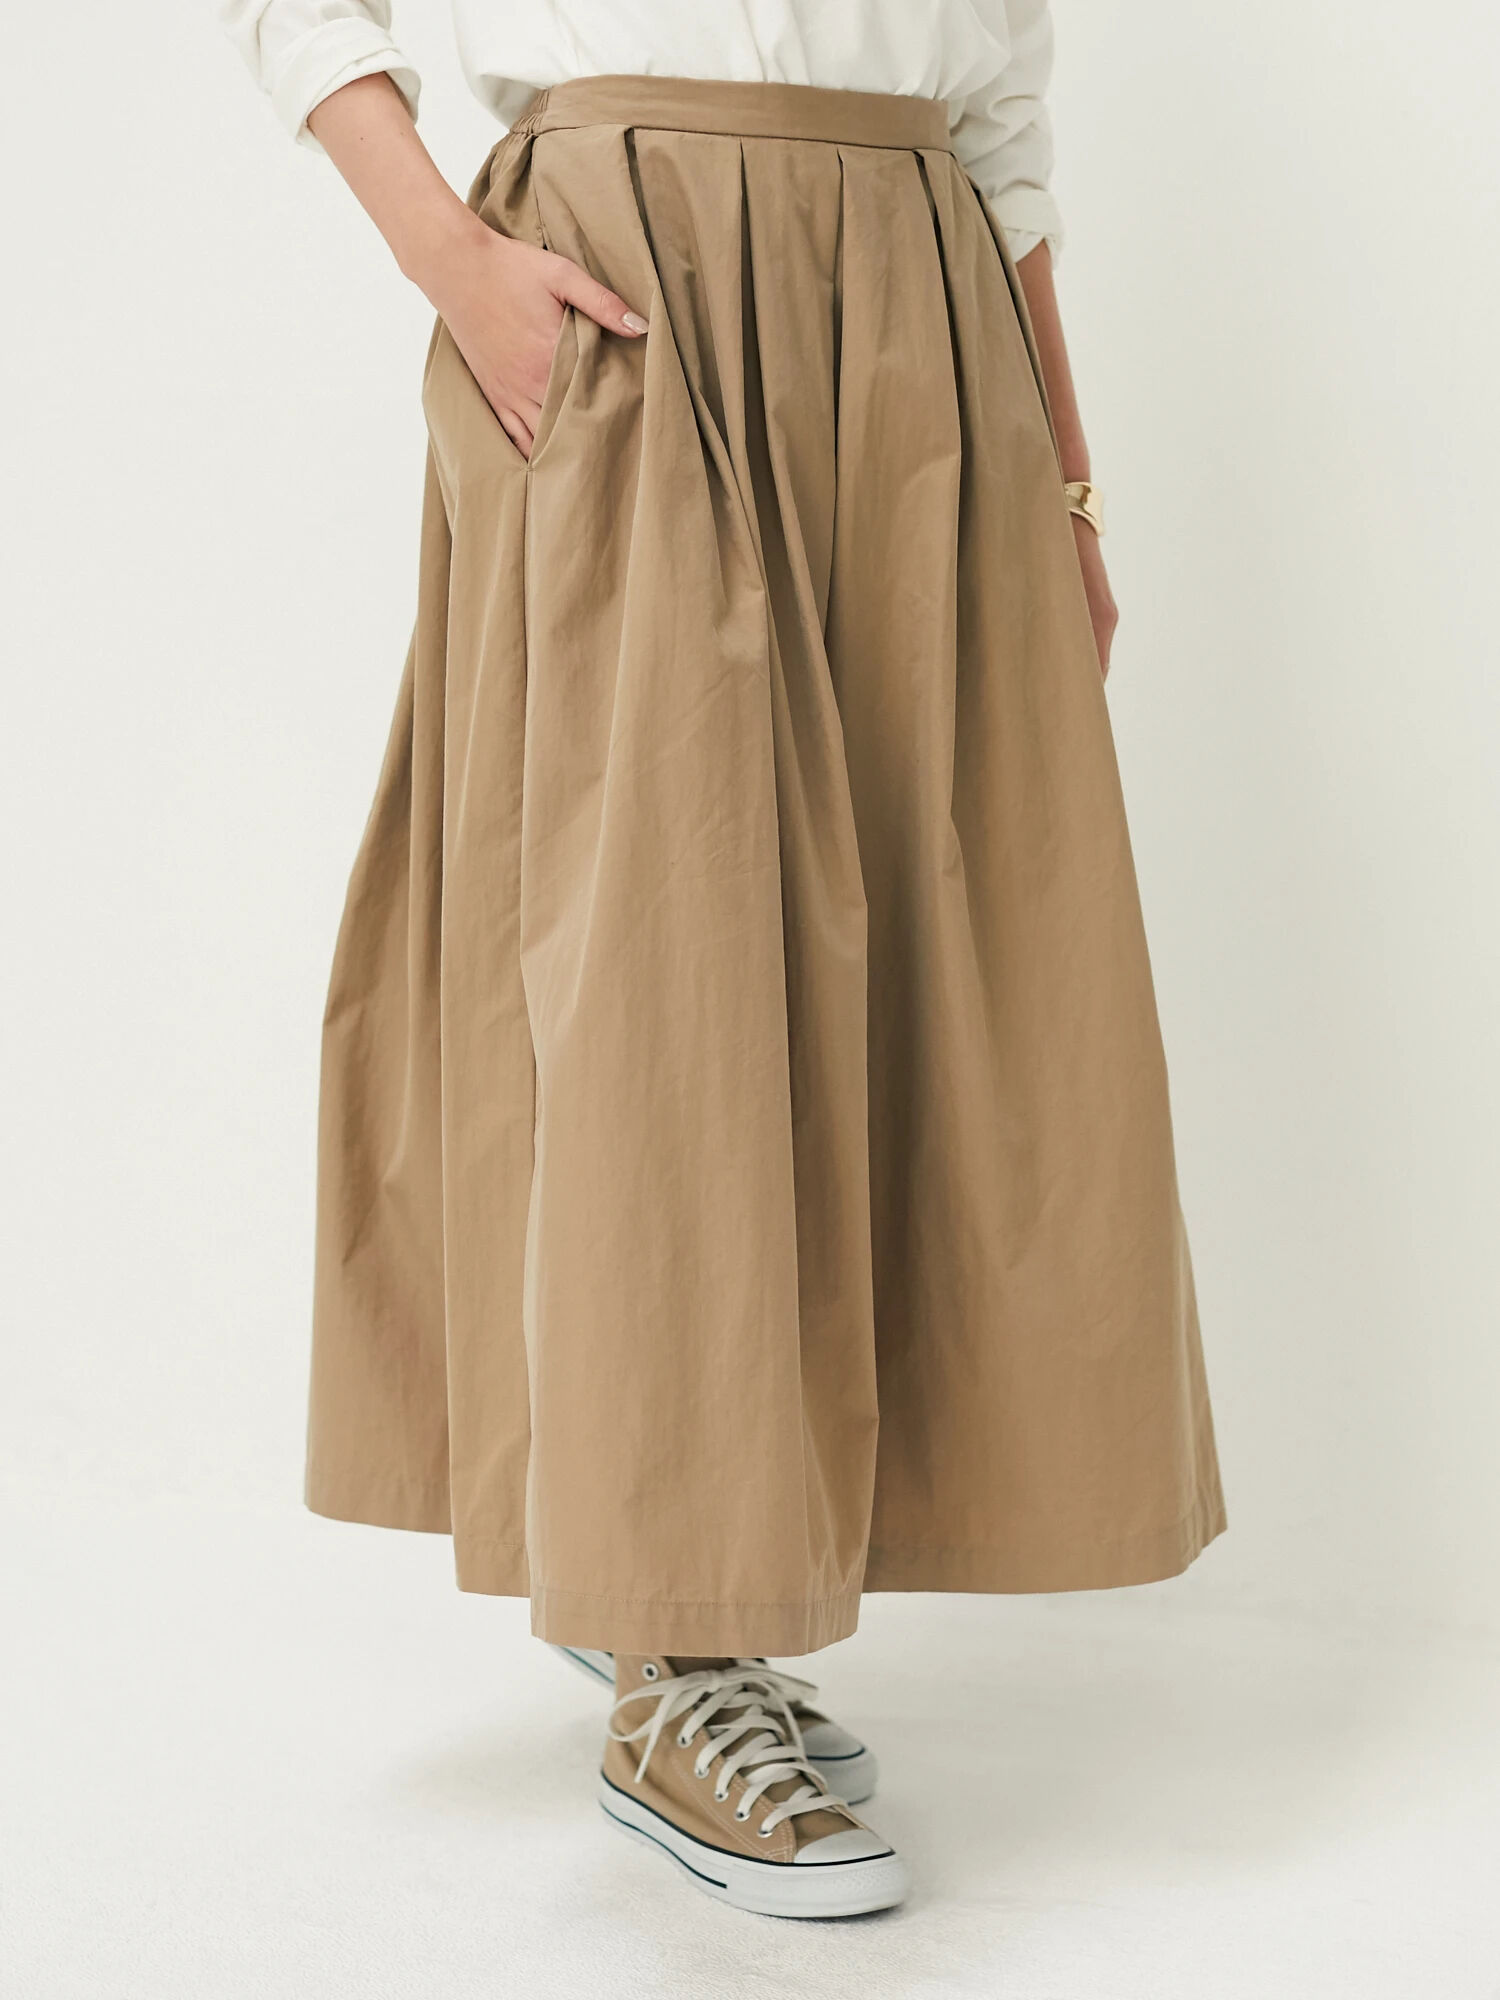 フロントタックロングスカート / CRAFT STANDARD BOUTIQUE(クラフト スタンダード ブティック)のスカート  ファッション通販のSTRIPE CLUB